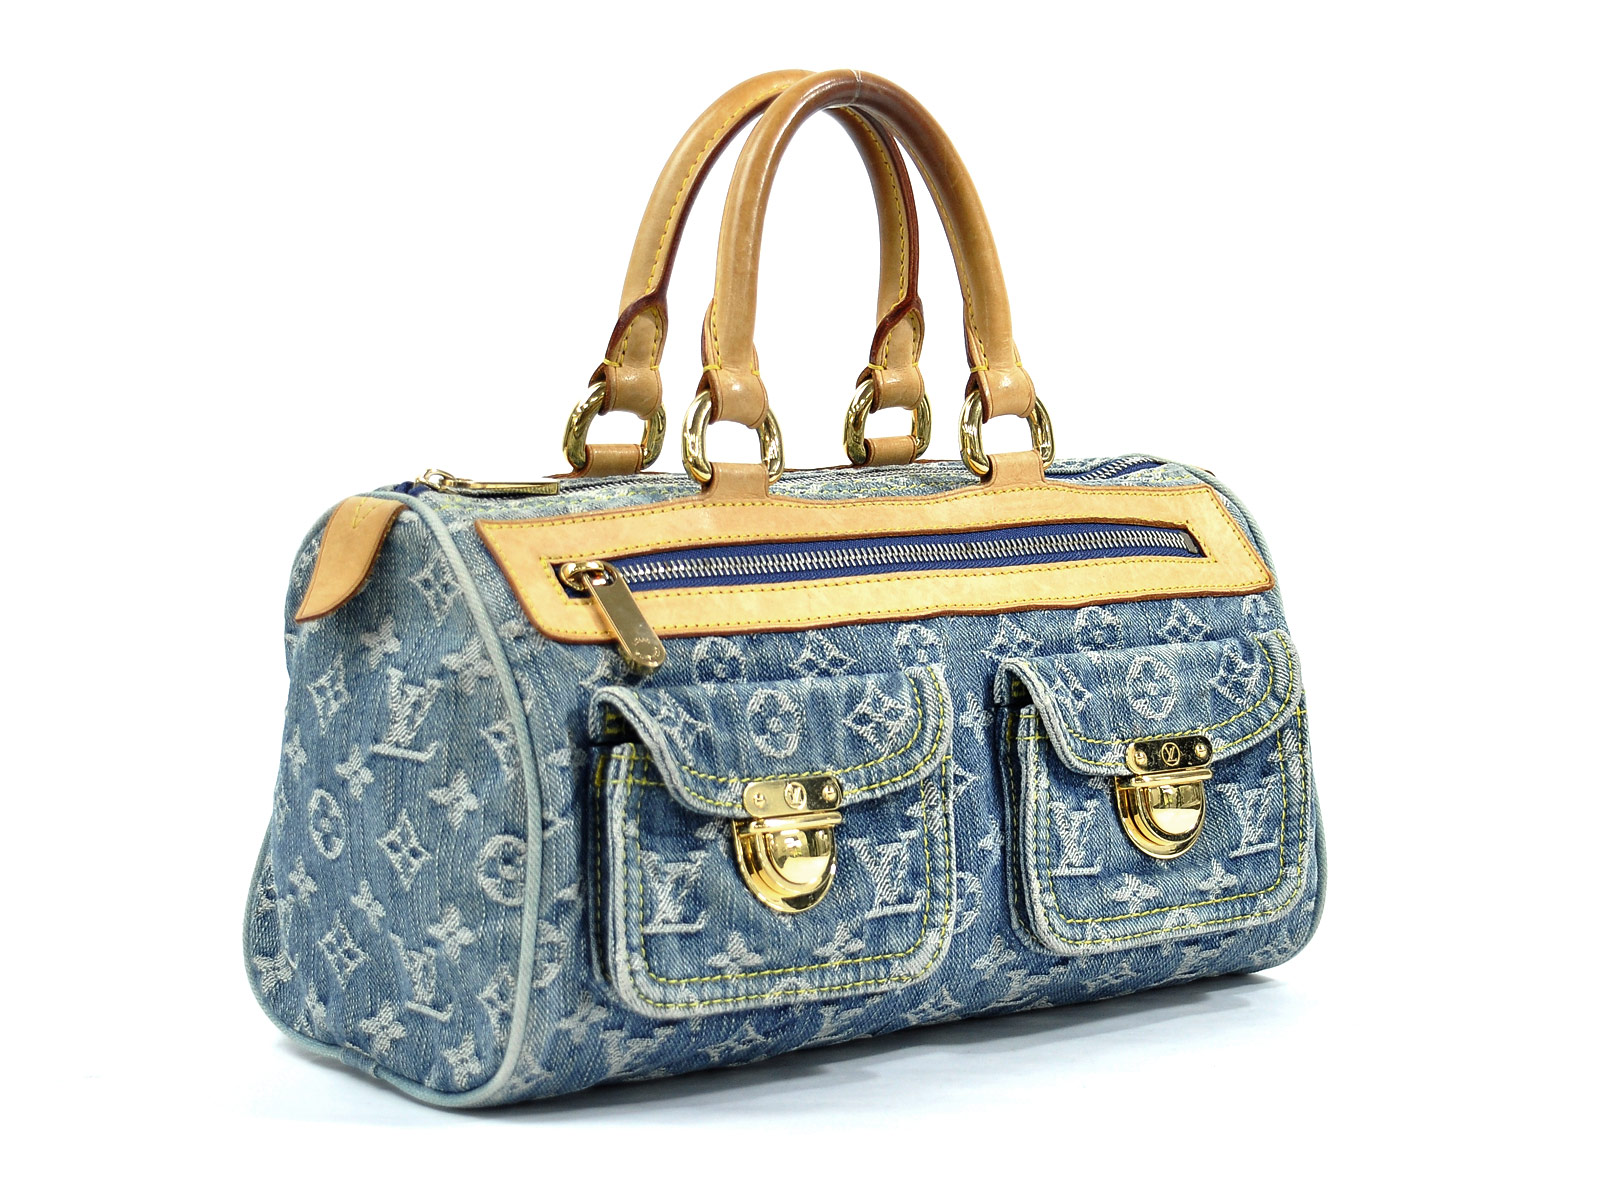 LOUIS VUITTON Neo Speedy Bag Monogram Denim Blue Beige Leather Handbag  M95019